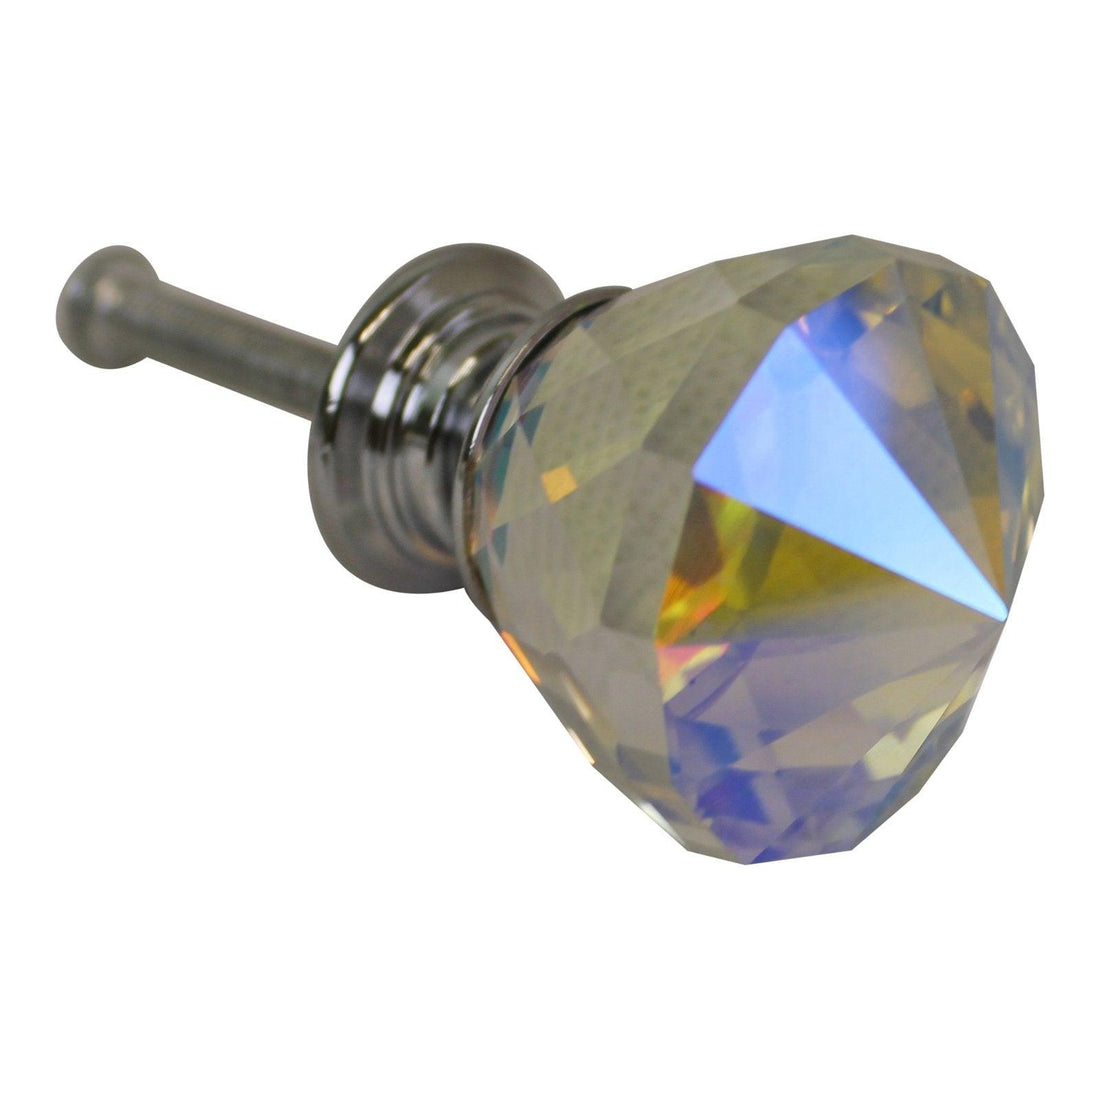 3cm Crystal Effect Doorknobs, diamond shaped, set of 4 - £20.99 - Doorknobs 